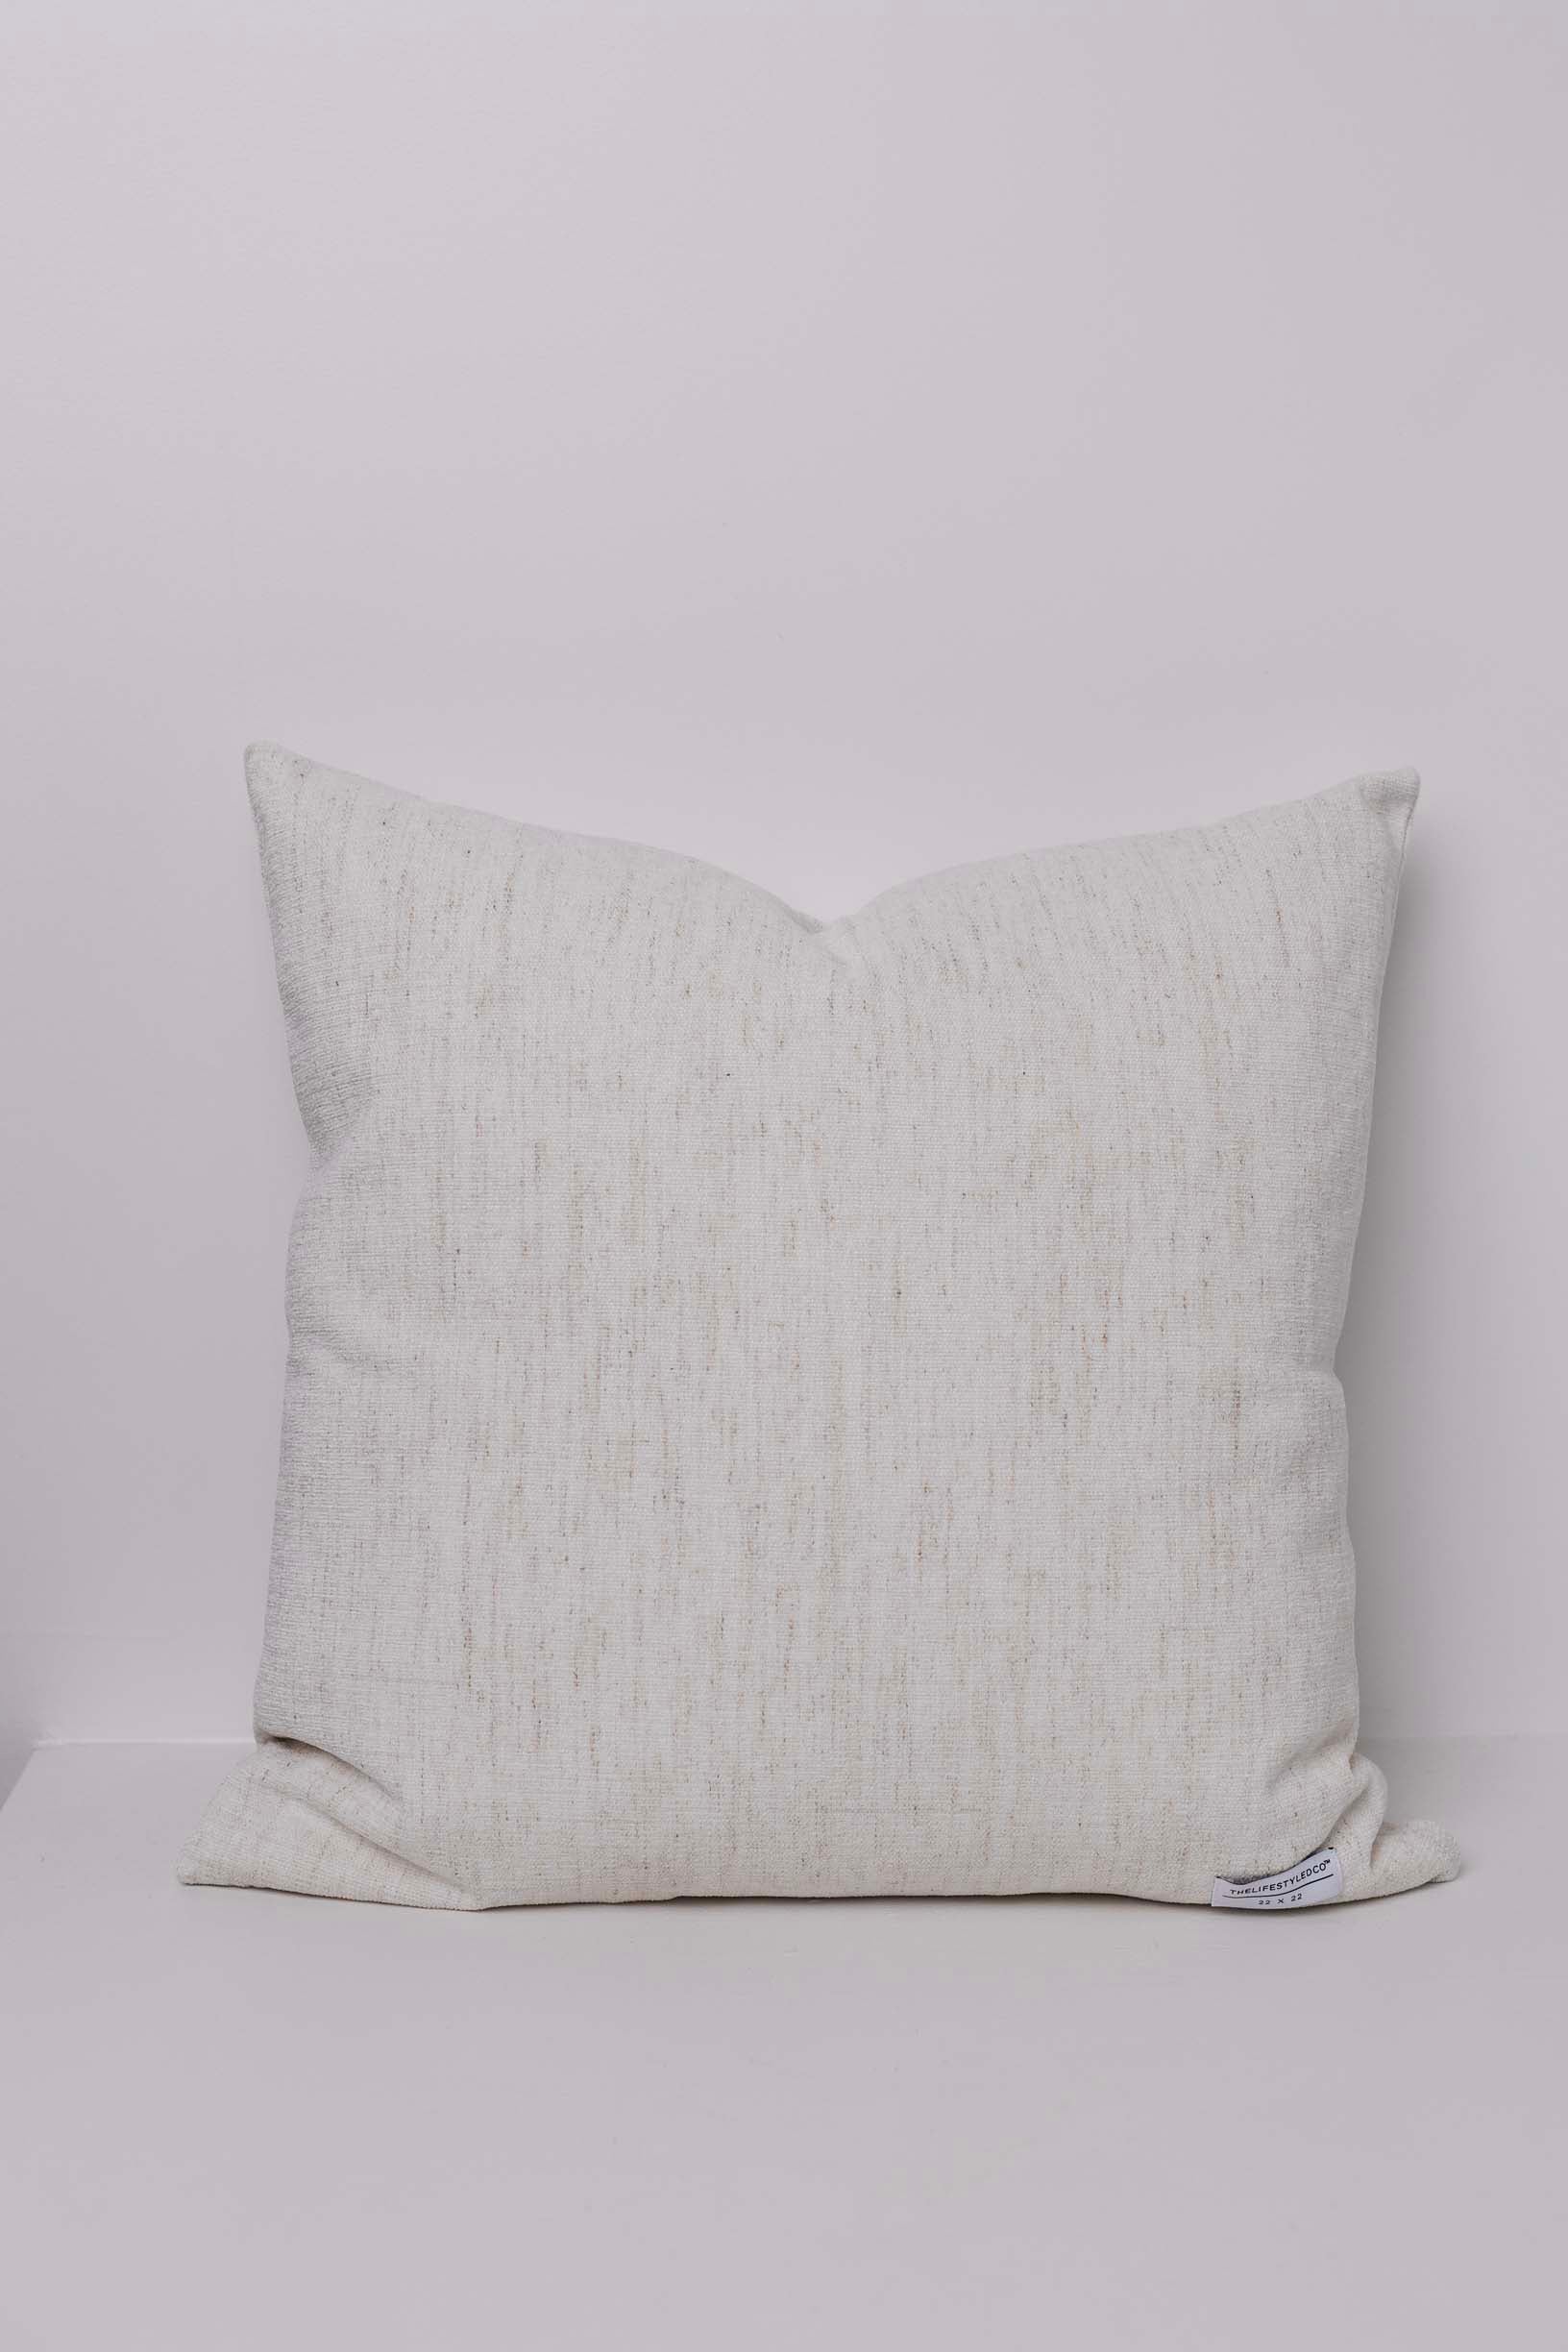 Whisper Slub Chenille Pillow - Bone - 2 Sizes